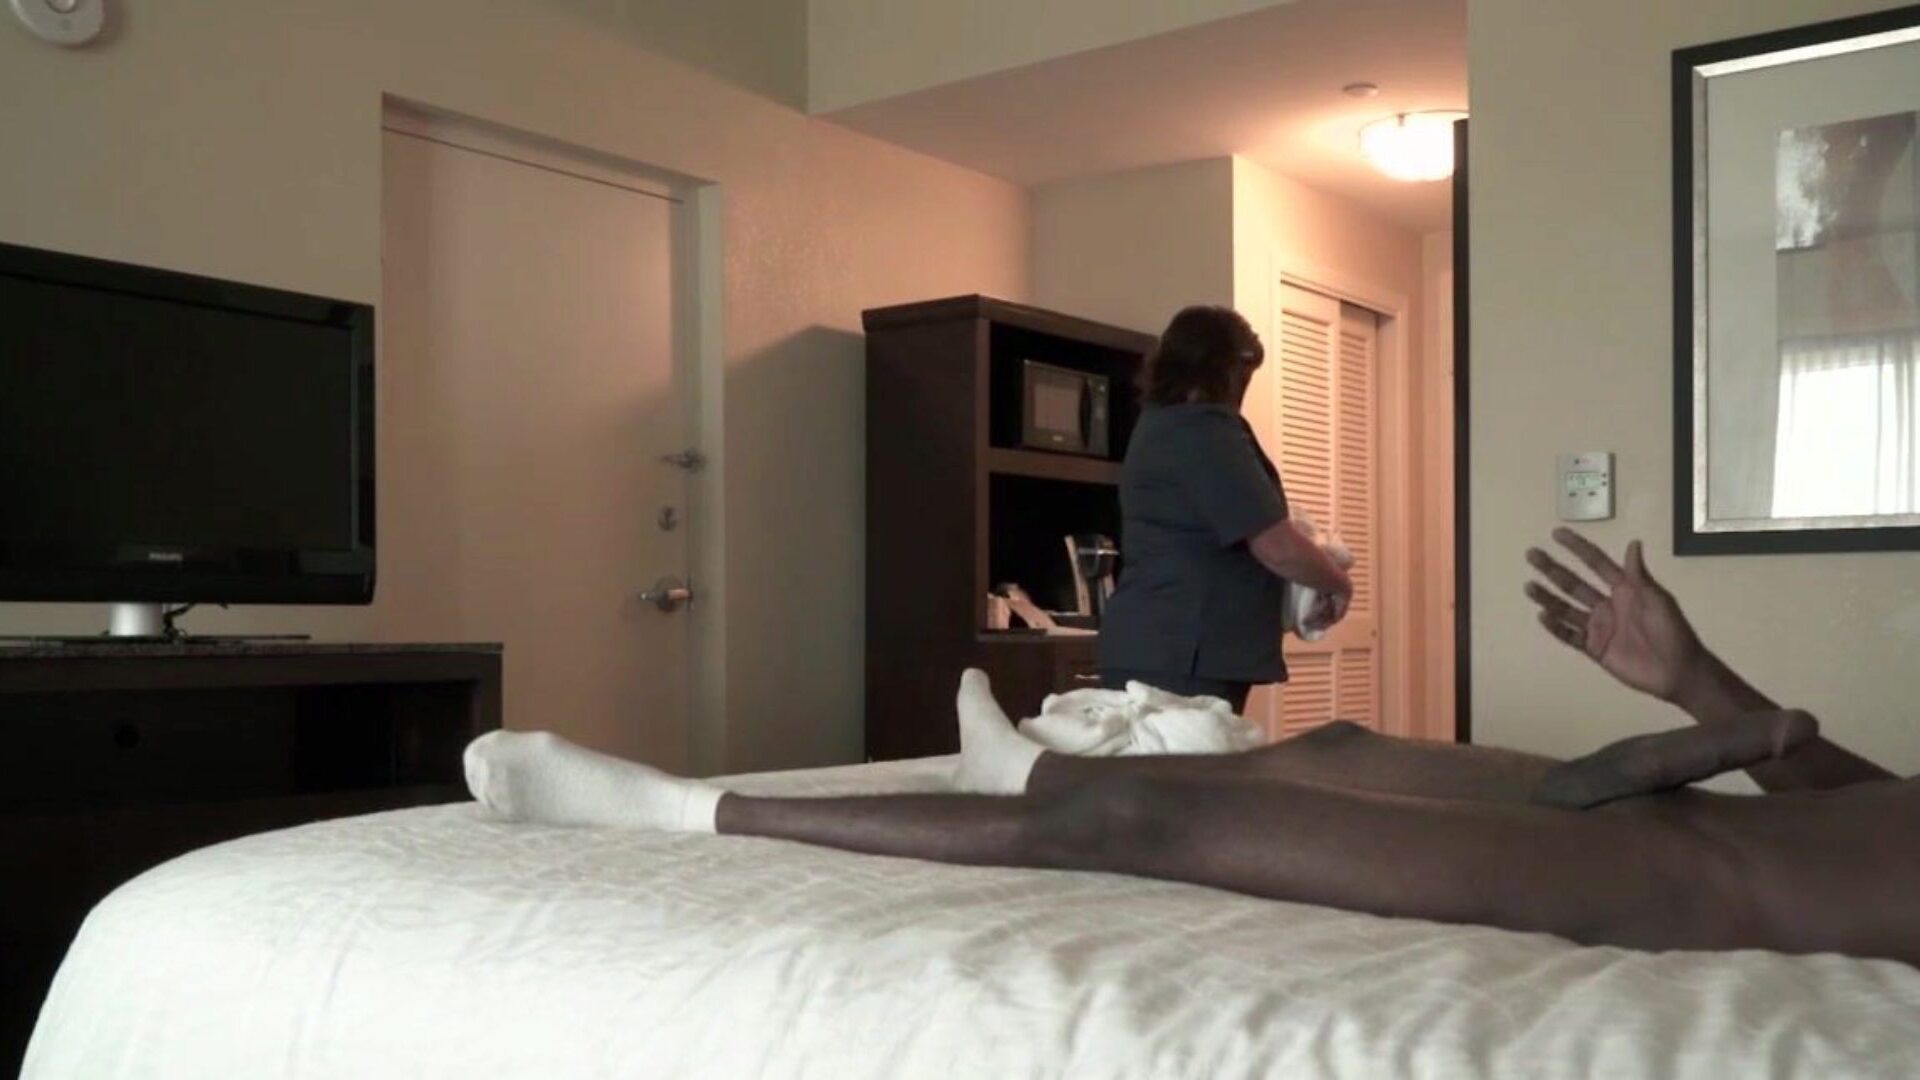 parade de niche - une belle femme de chambre d'hôtel caresse une grosse bite noire avec des mains blanches